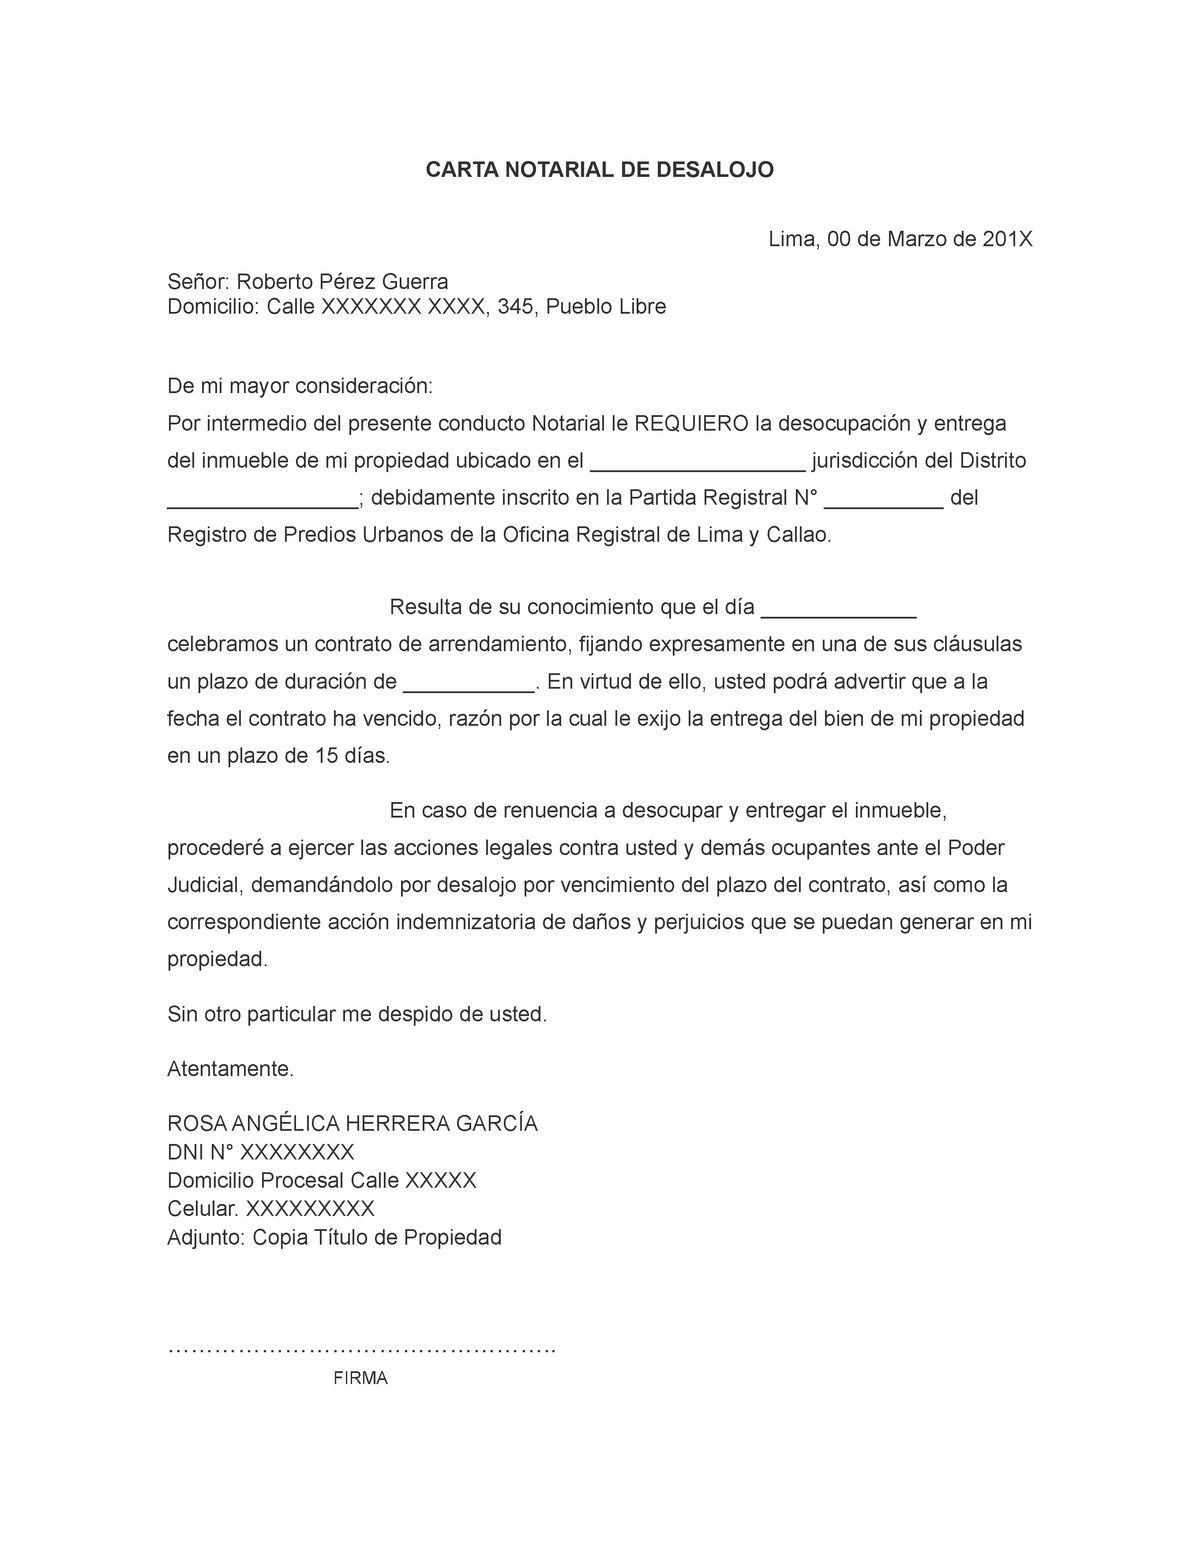 7 11 52 2 Modelo Carta Notarial Desalojo En El Regimen Peruano Carta